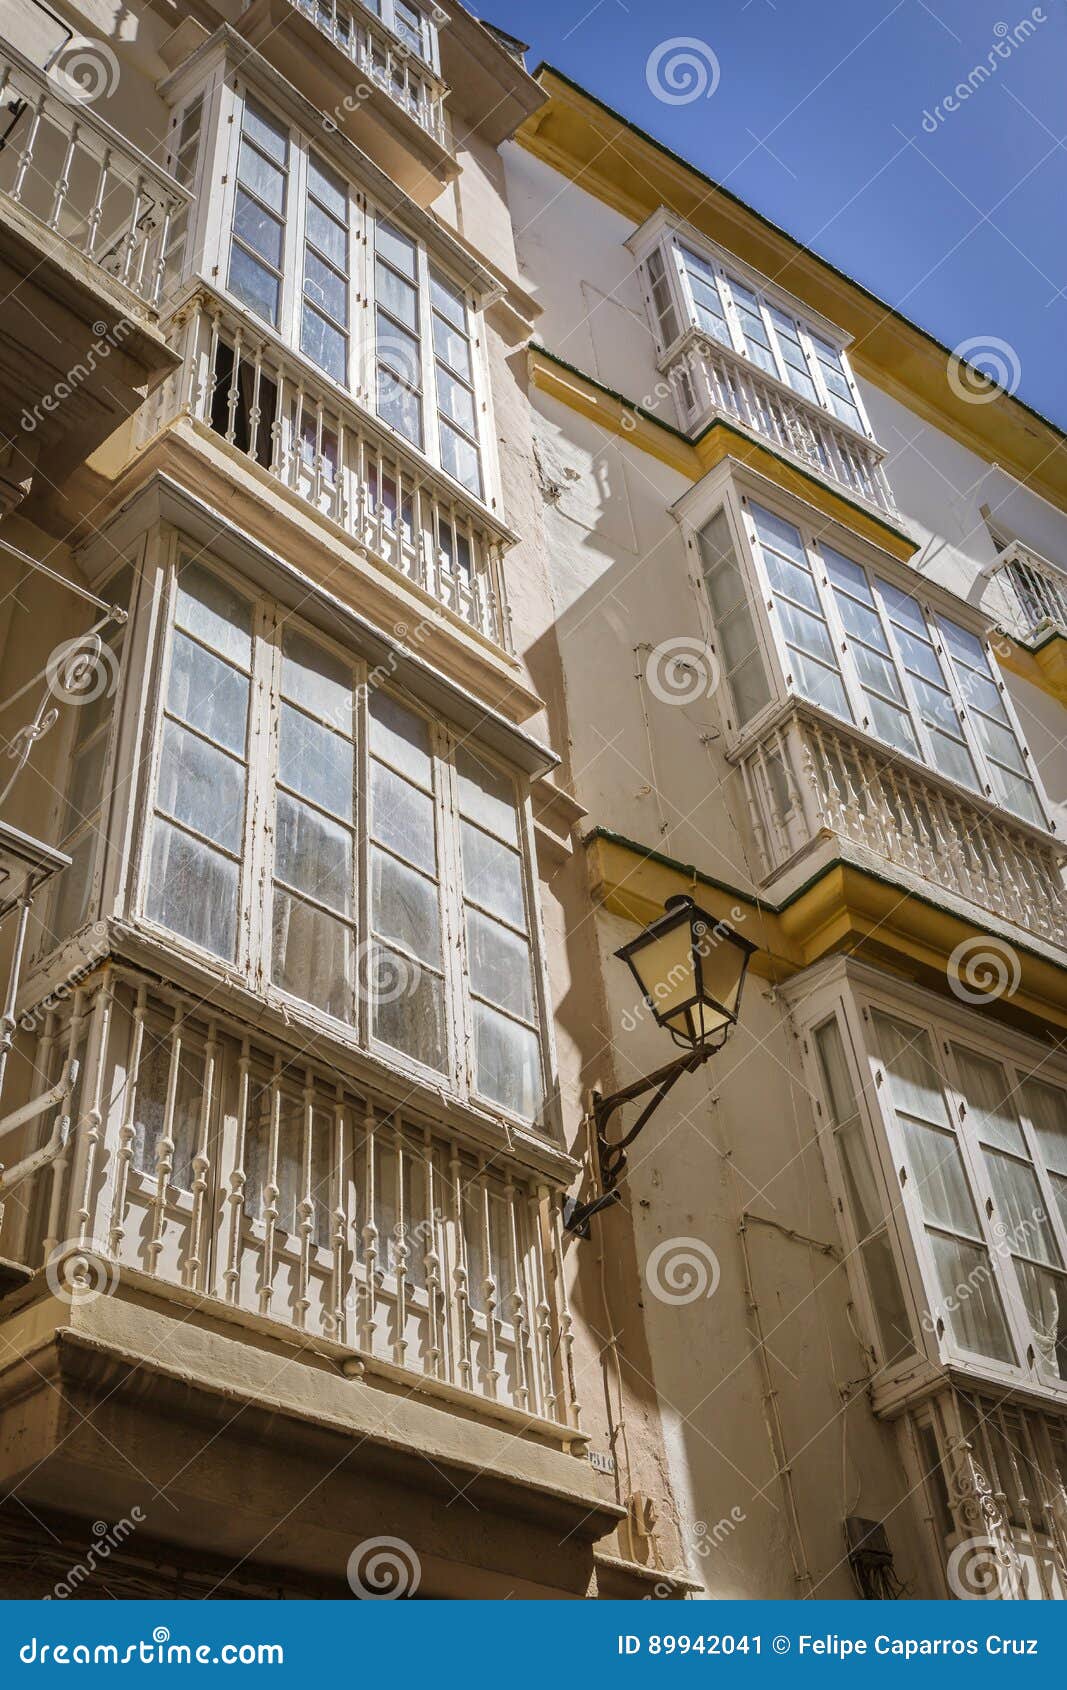 Detalj av balkonger och stora fönster på tiden av nineteen. Detalj av balkonger och stora fönster på tiden av århundradet för th 19, smal gata med traditionell arkitektur i Cadiz, Andalusia, sydliga Spanien